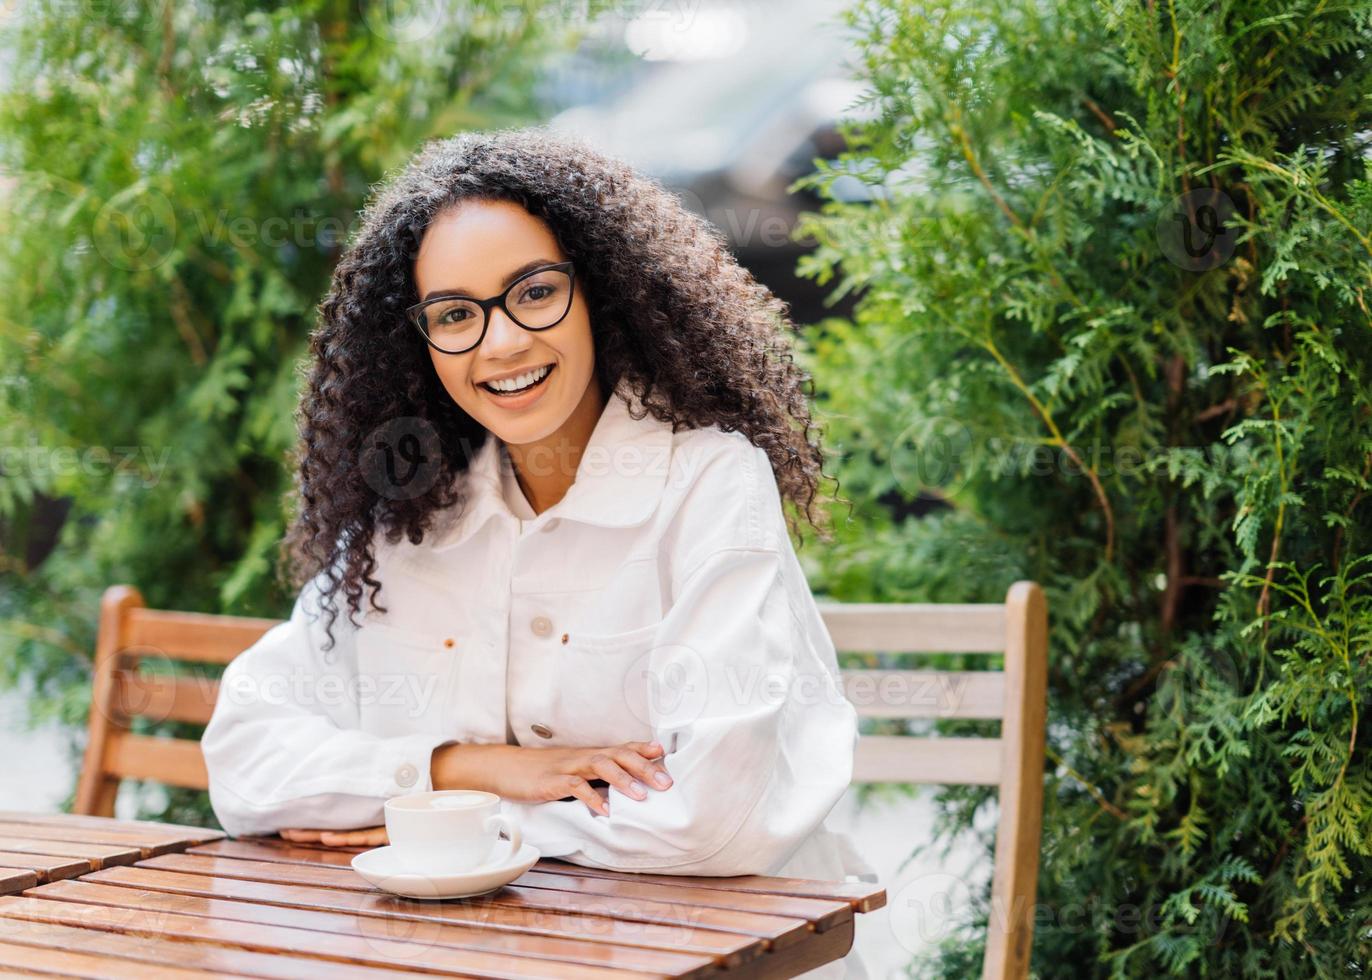 ontspannen vrolijke afro-vrouw in witte kleding, drinkt koffie in de buitencafetaria, zit aan houten tafel op stoel tegen groene thuja, heeft een gelukkige uitdrukking. mensen, levensstijl, vrije tijd concept foto